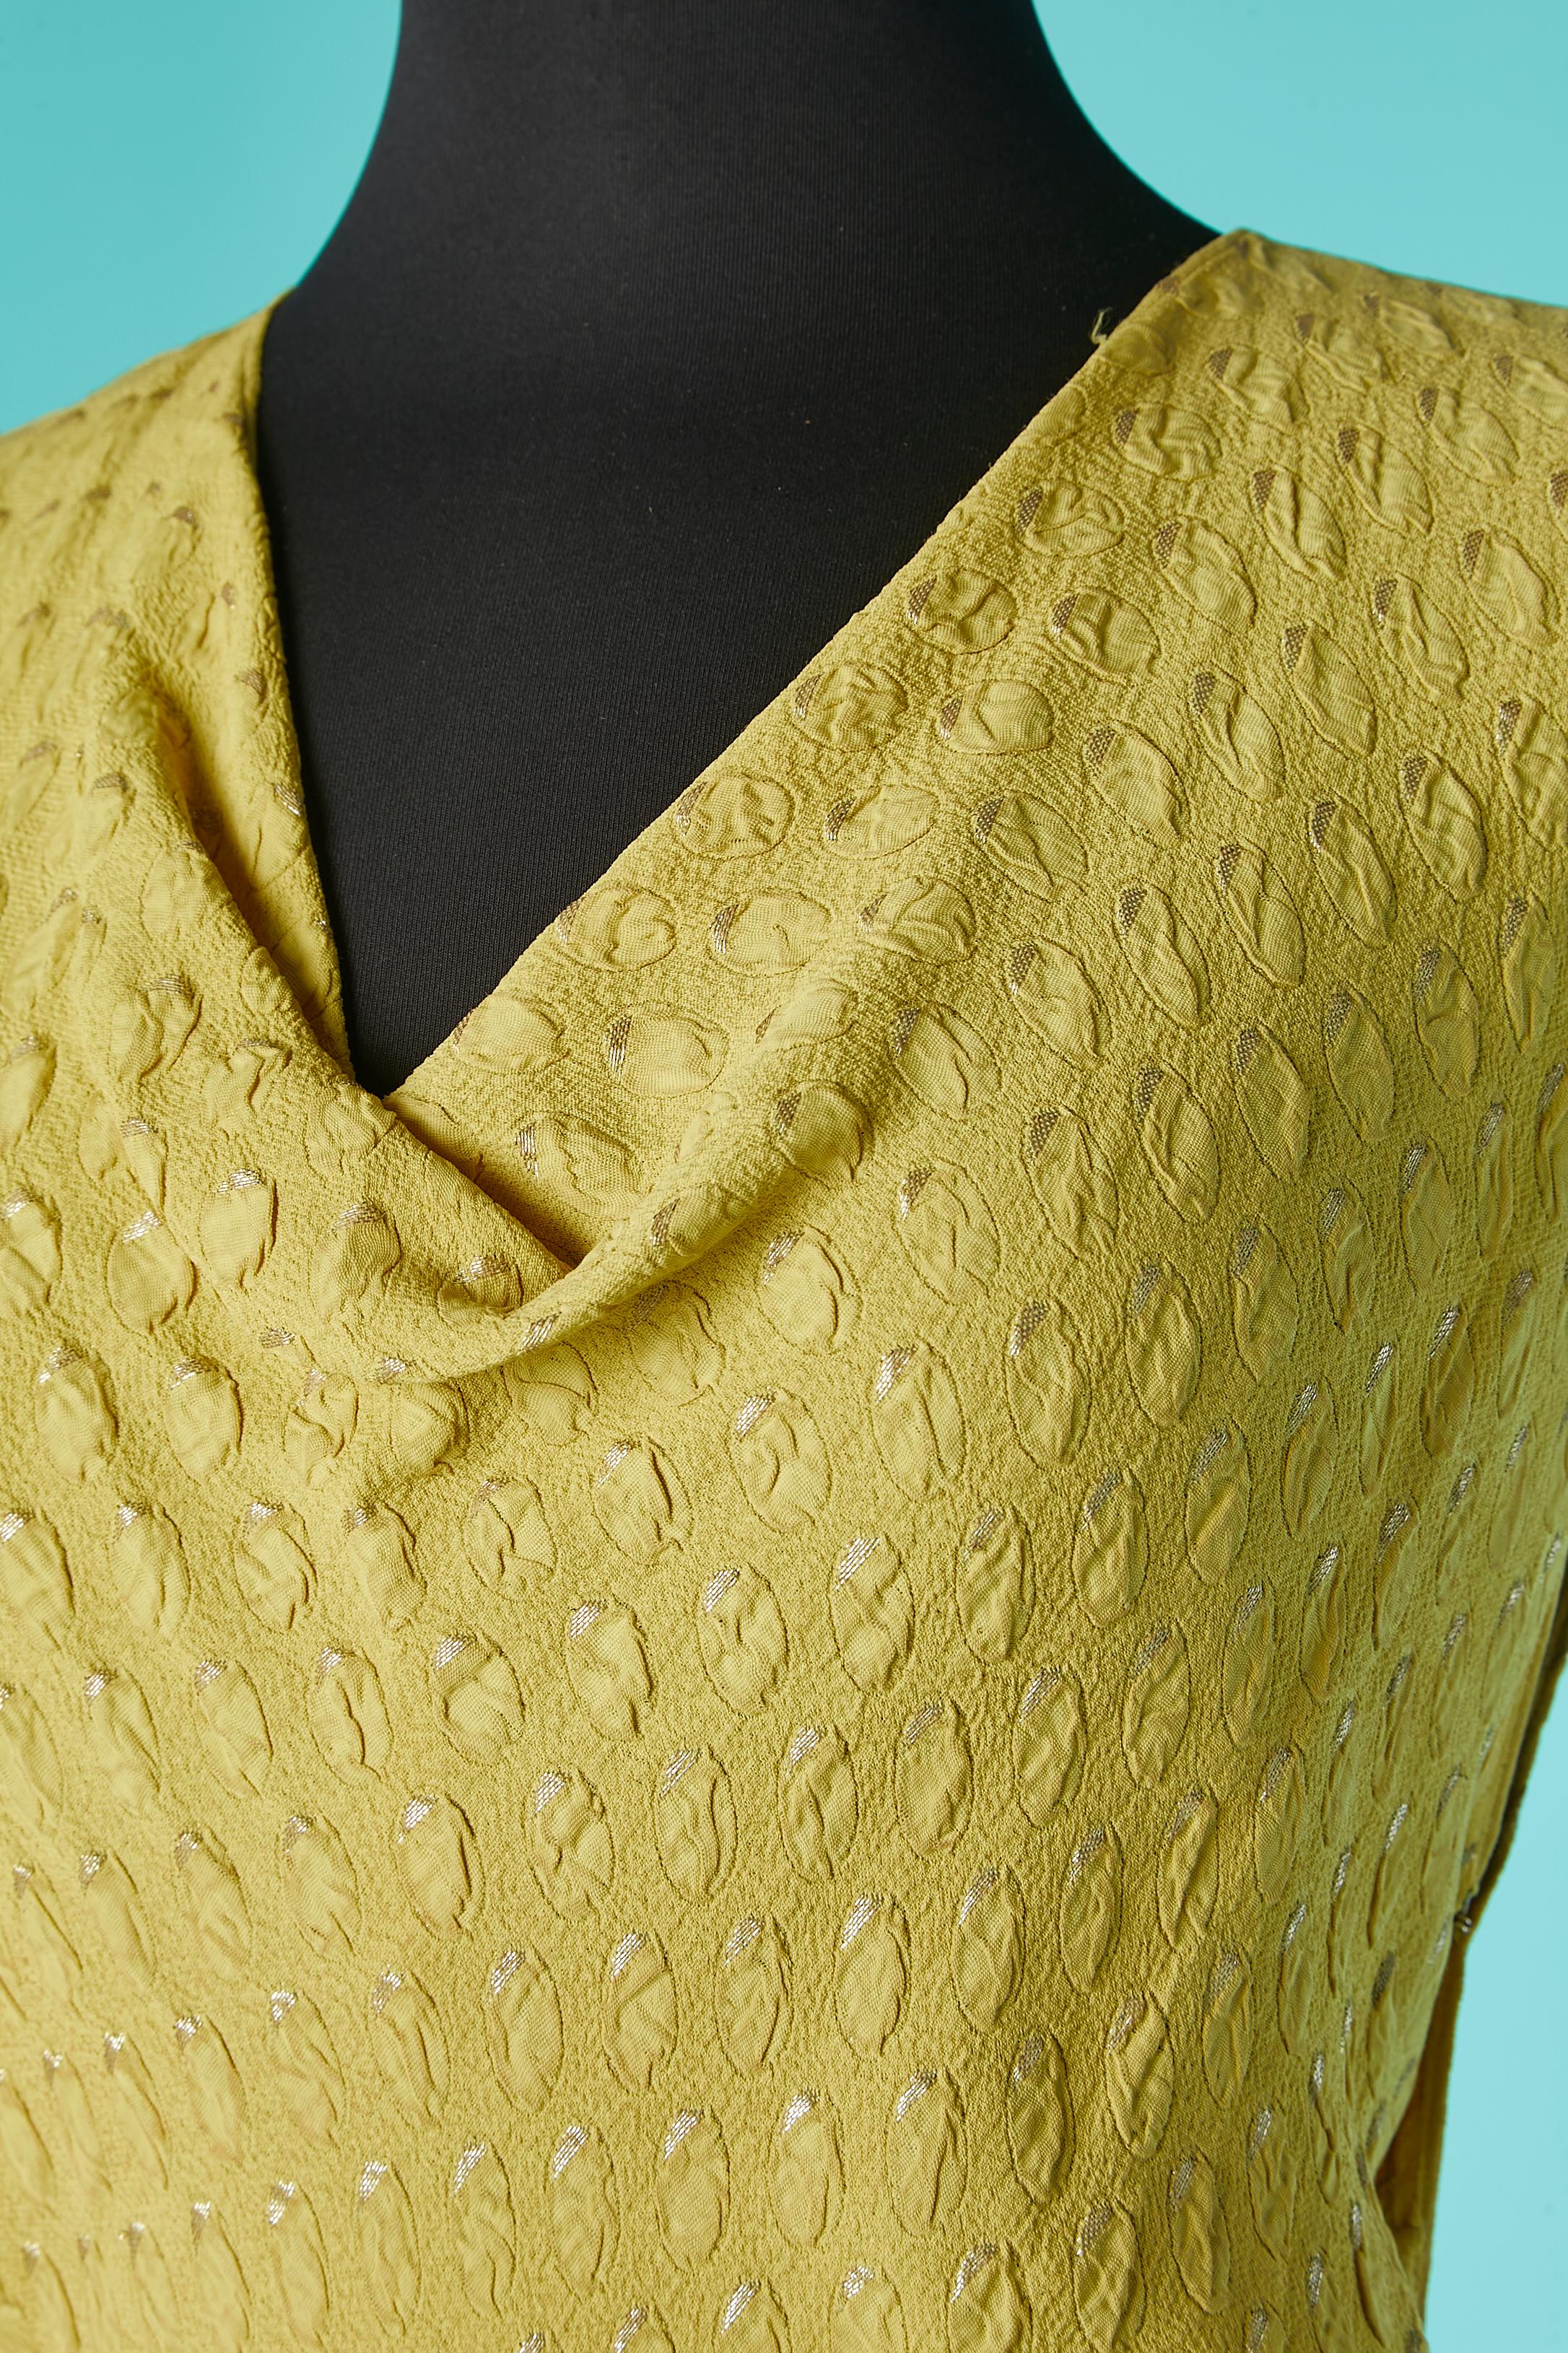 Abendkleid aus gelber Seide und Lurex-Jacquard mit verziertem Gürtel mit kleinen silbernen Lurexkugeln (anscheinend Blaubeeren) als Verzierung. Karabiner und Haken und Öse auf beiden Seiten. 
Oberteil aus Biais, mit 